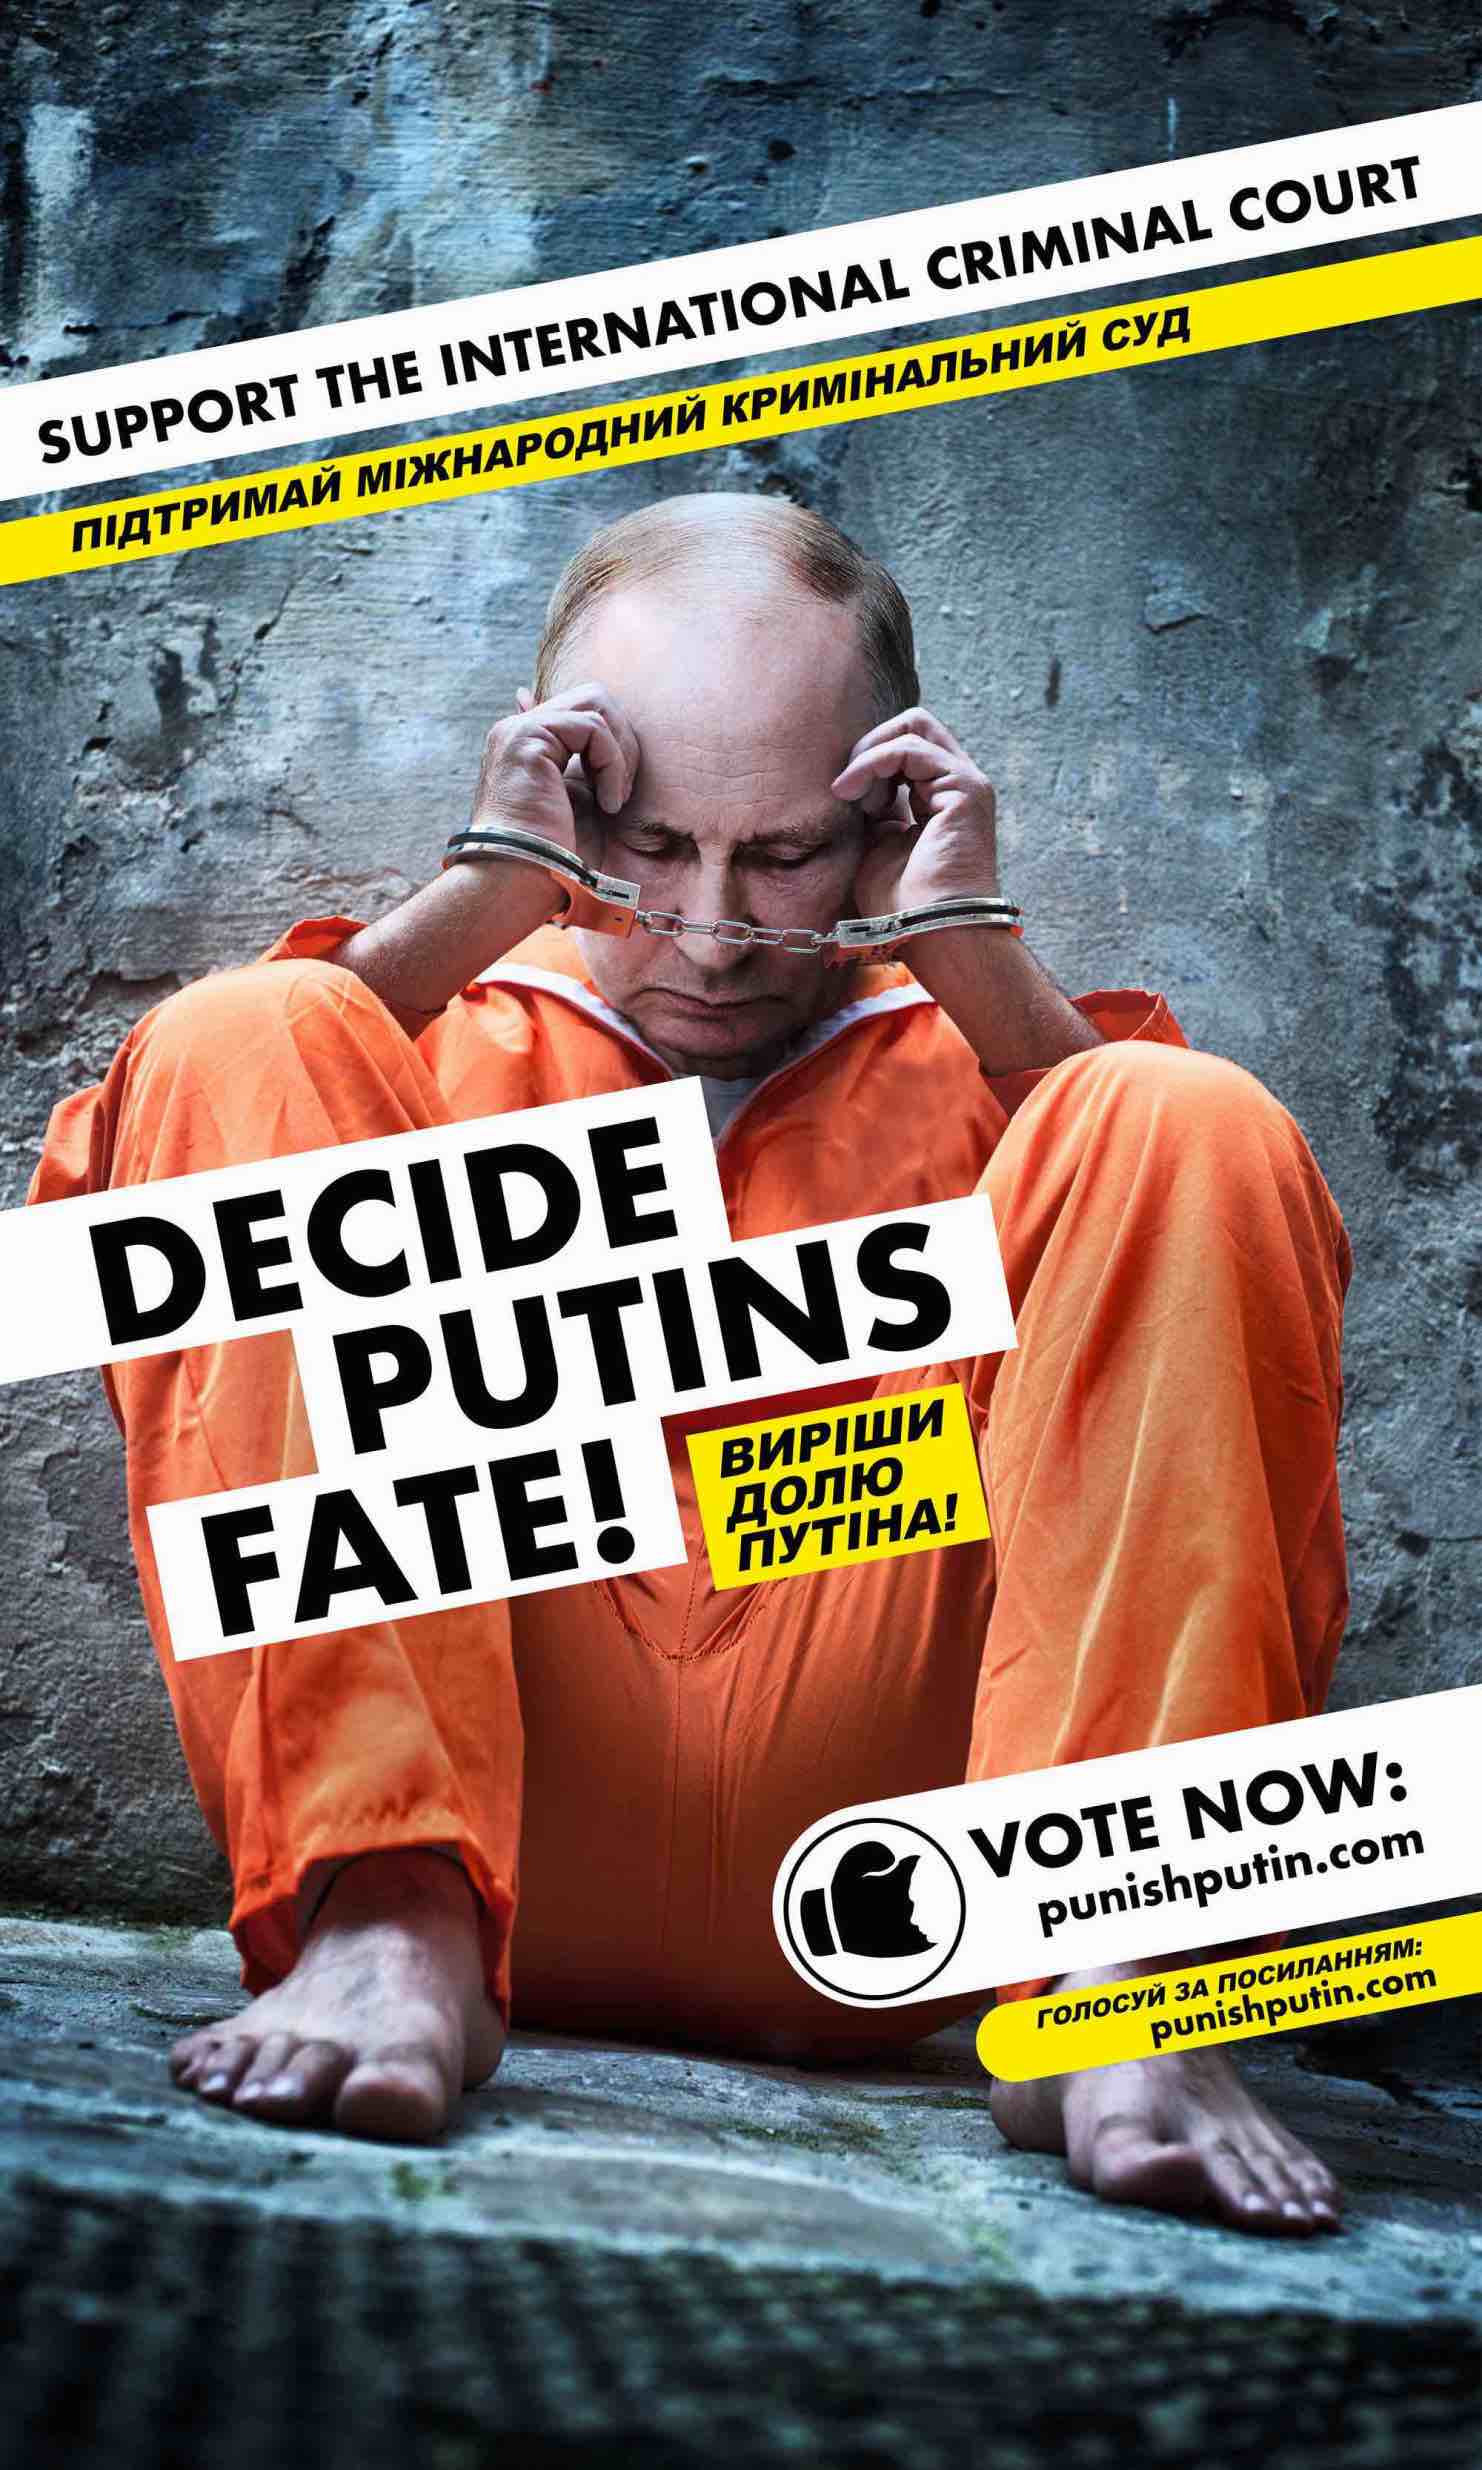 Aktionskunst: Punish Putin